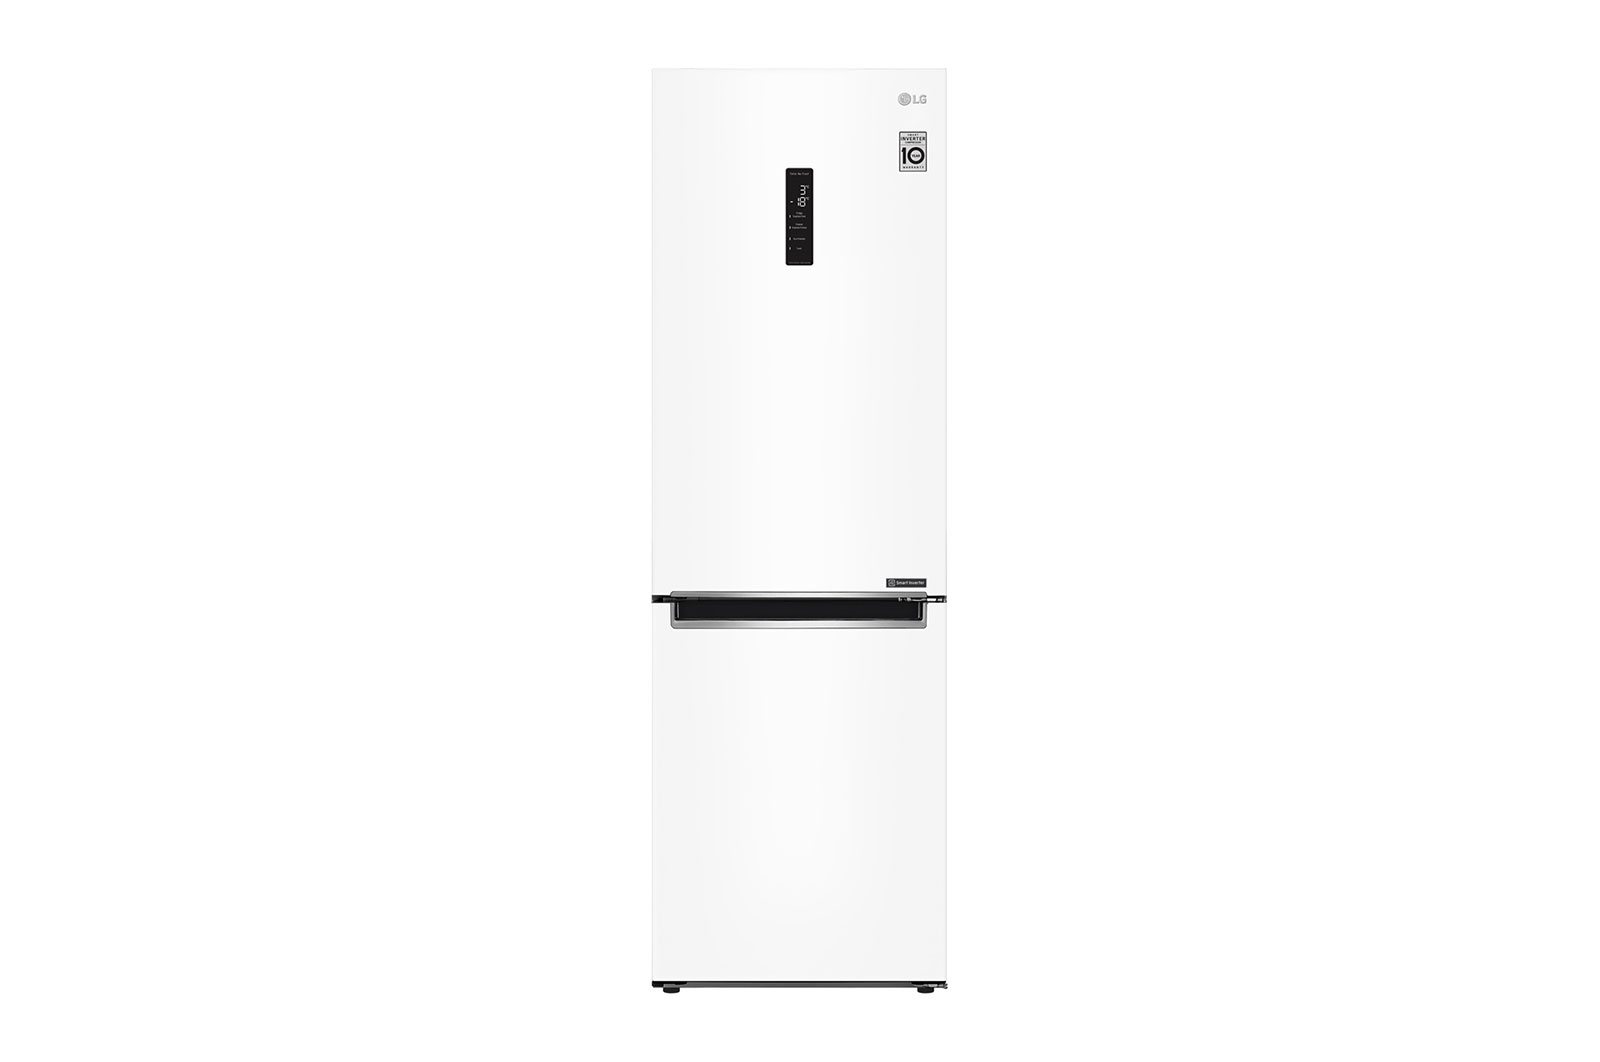 Двухкамерный холодильник LG GA-B459MQSL																		 — описание, фото, цены в интернет-магазине Премьер Техно